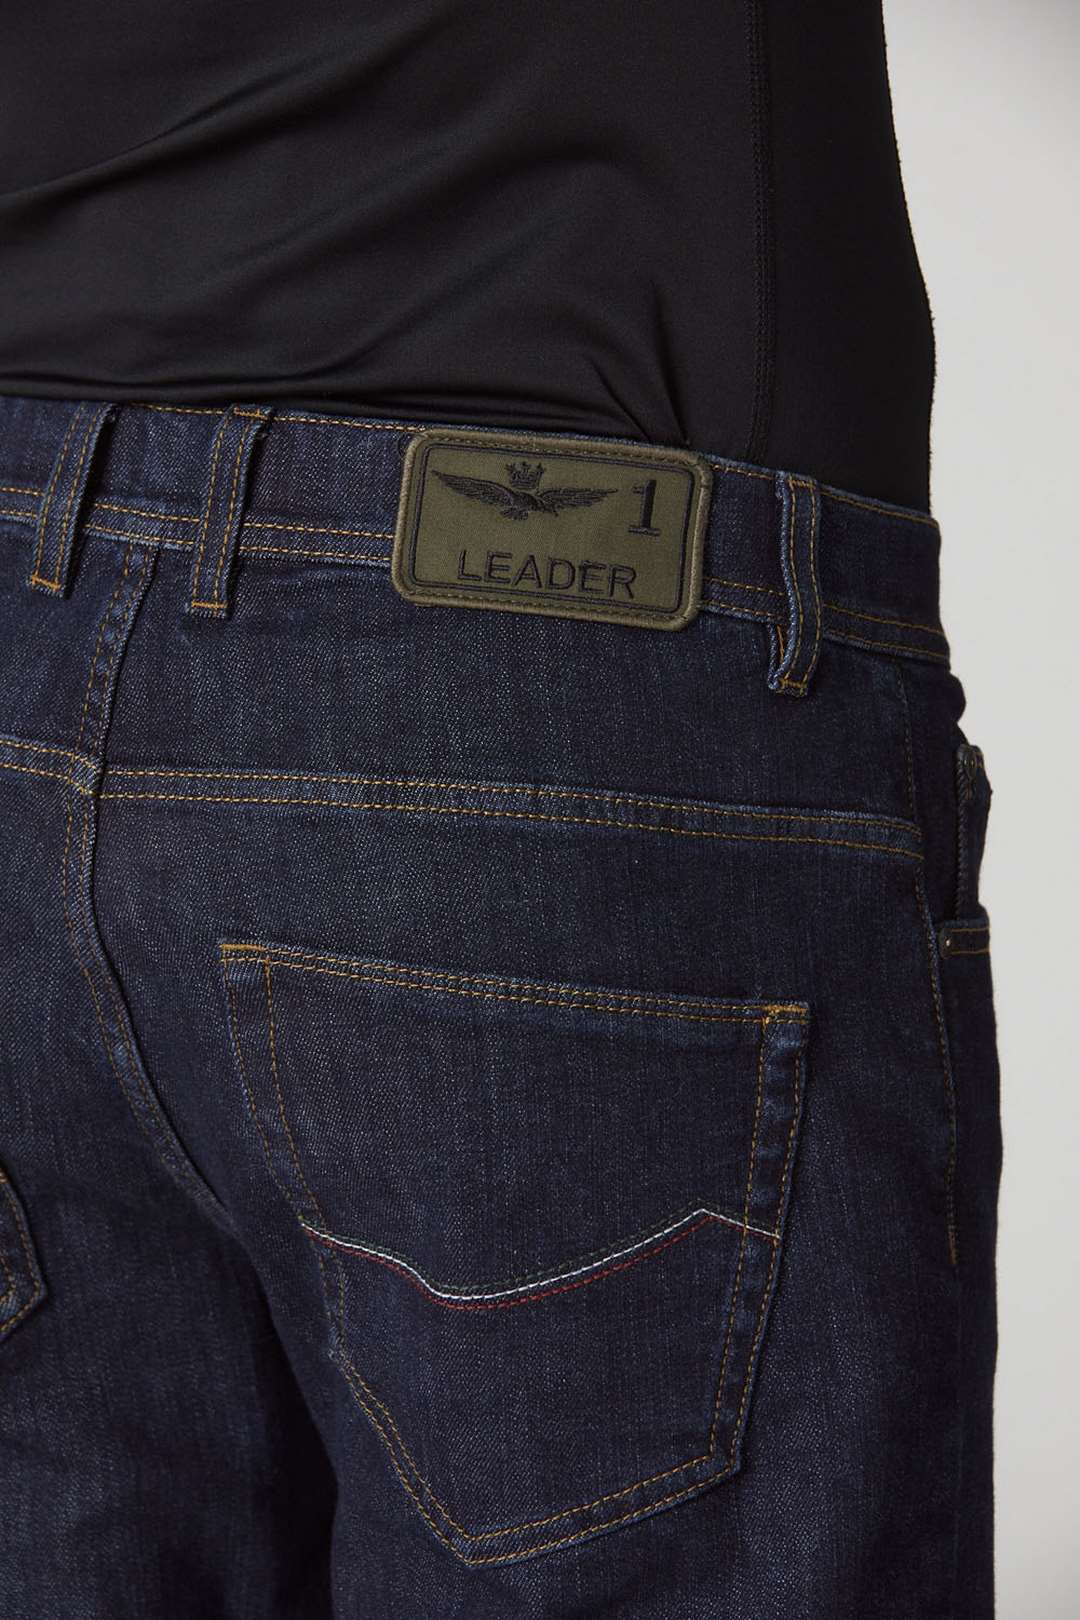 detail Kalhoty pantalone 5 tasche 232PJ200CT3075